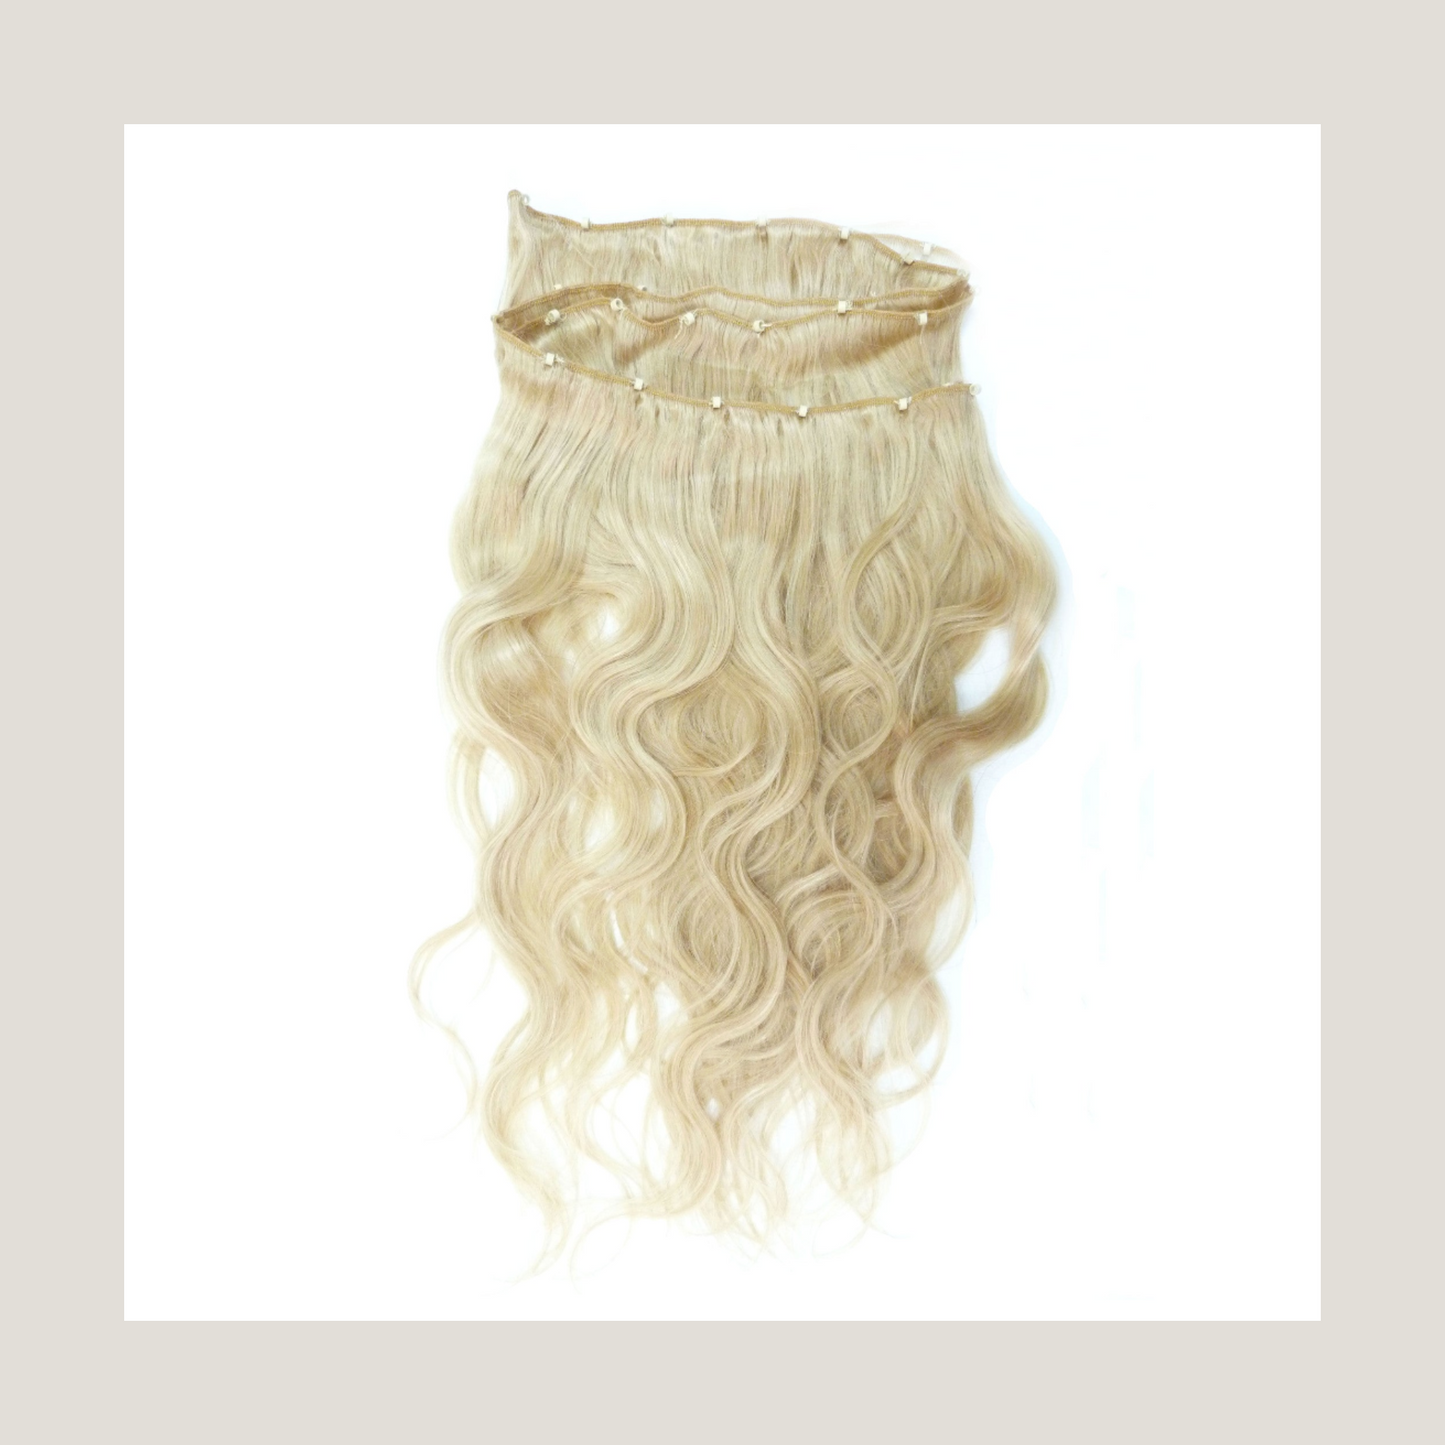 שיער אנושי של רמי בתולה אירופית, la weave, תוספות מיקרו ערב